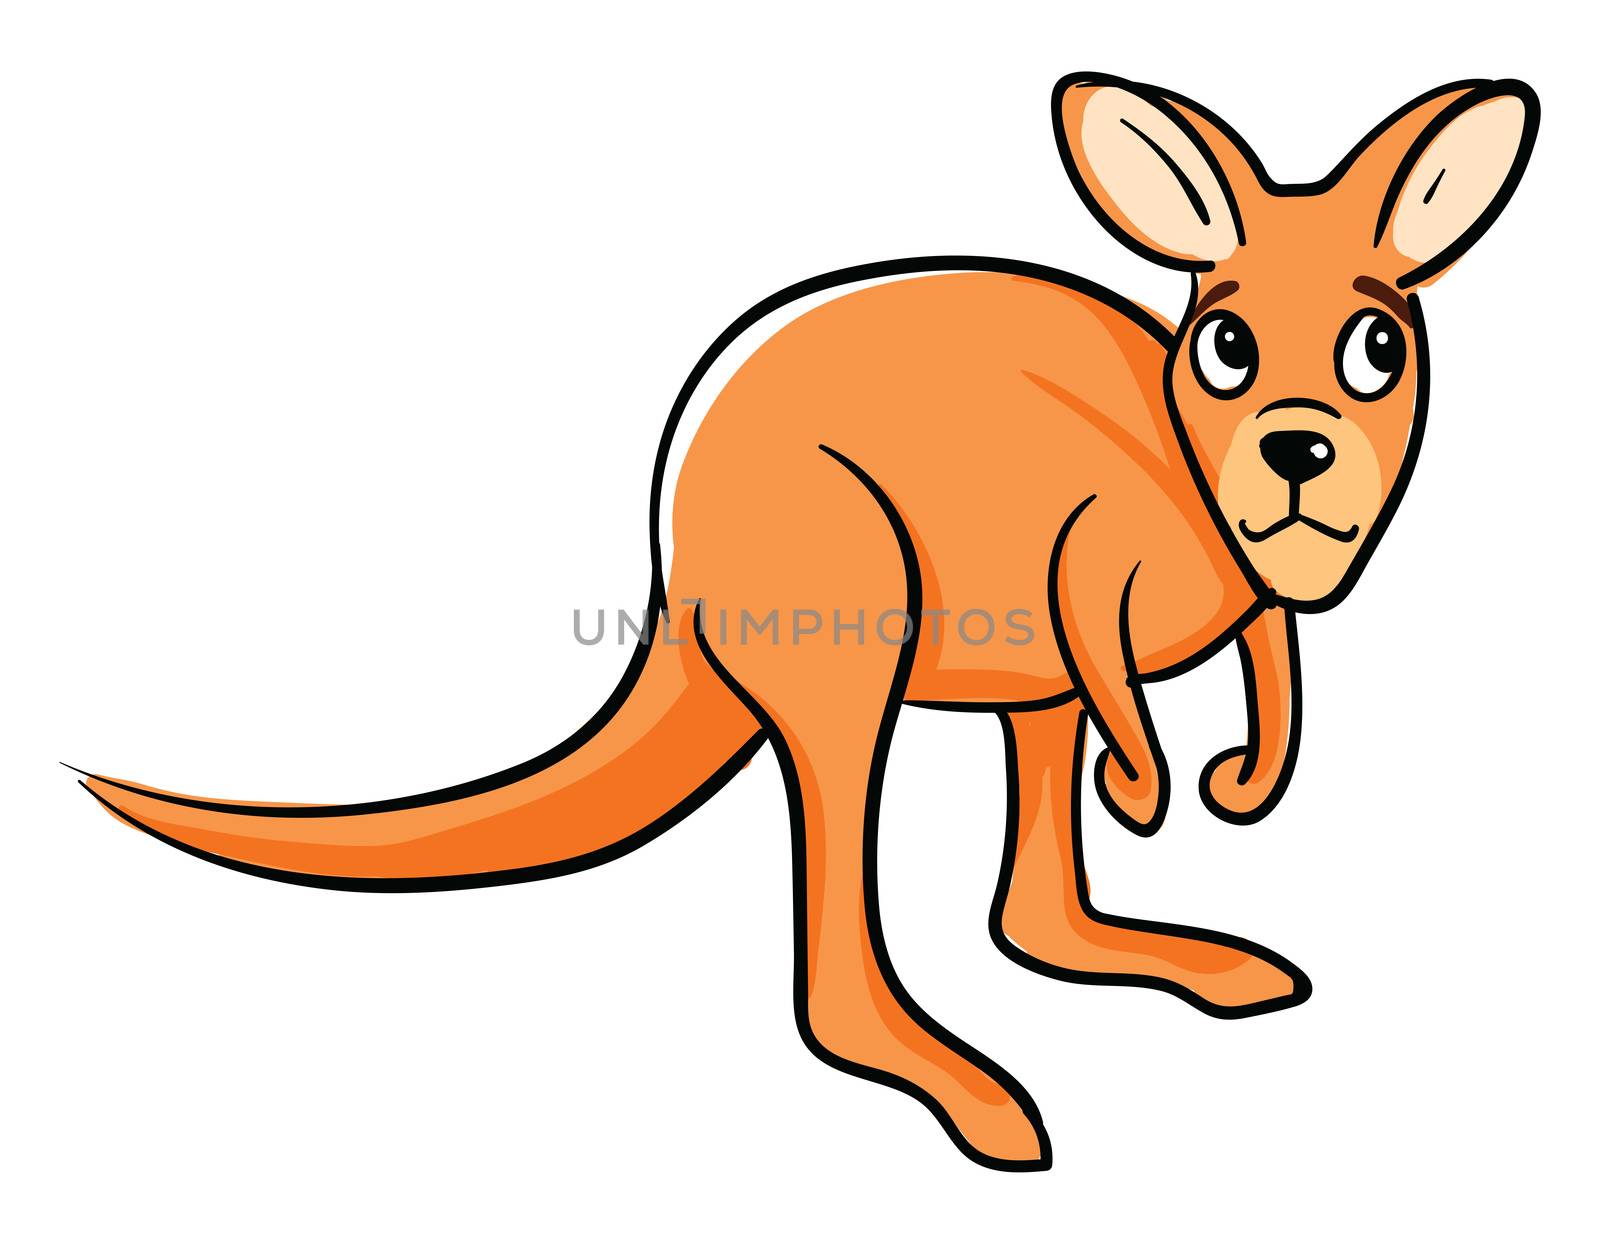 Sad kangaroo , illustration, vector on white background by Morphart